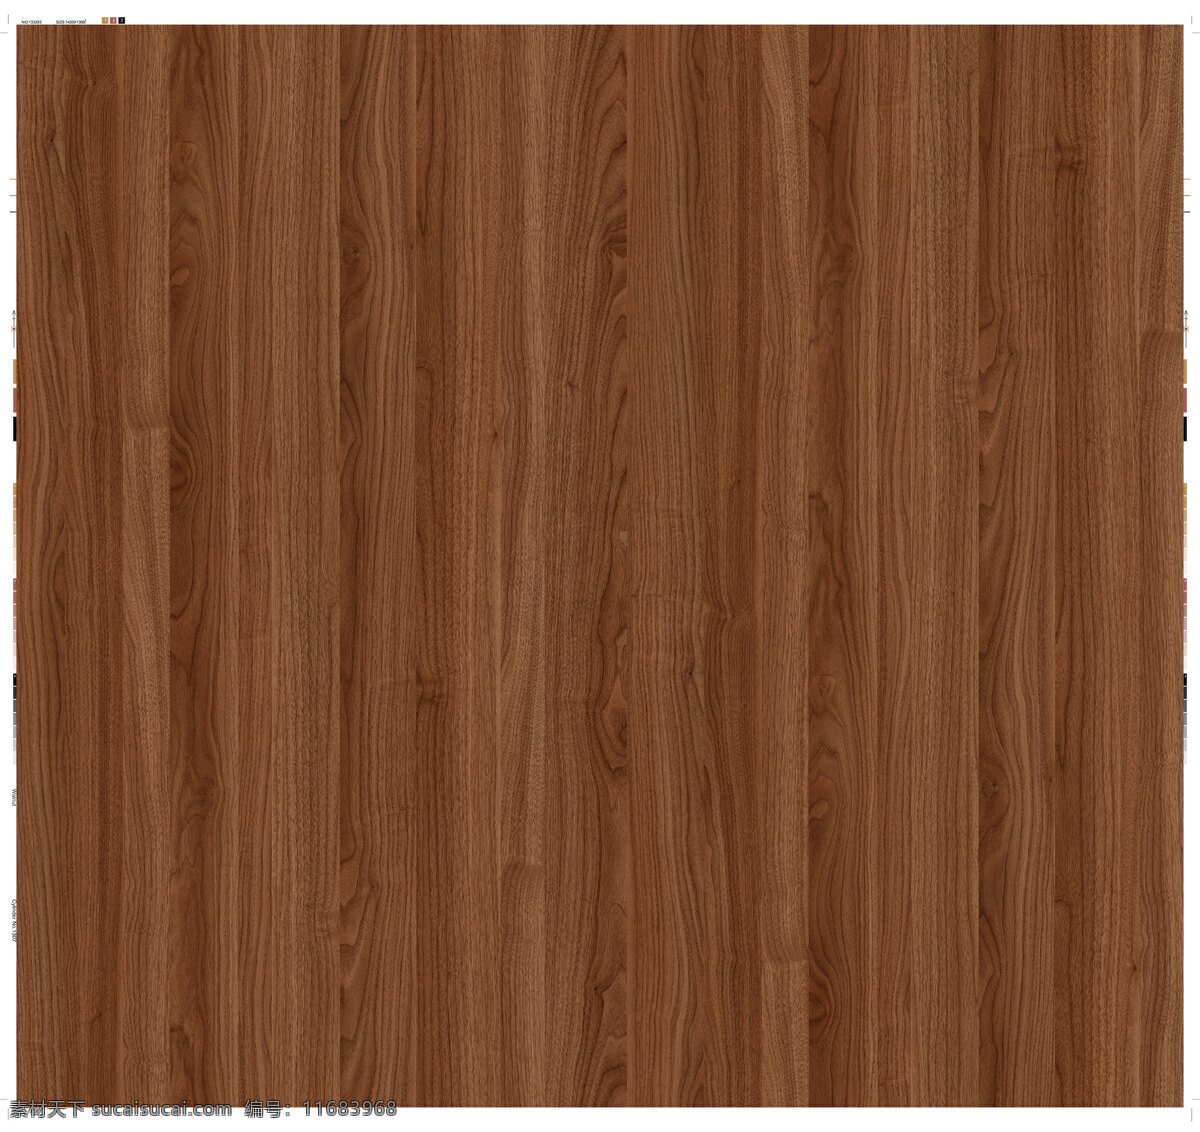 超清木纹 木饰面 家居板材颜色 木纹贴图 家居设计 3d设计